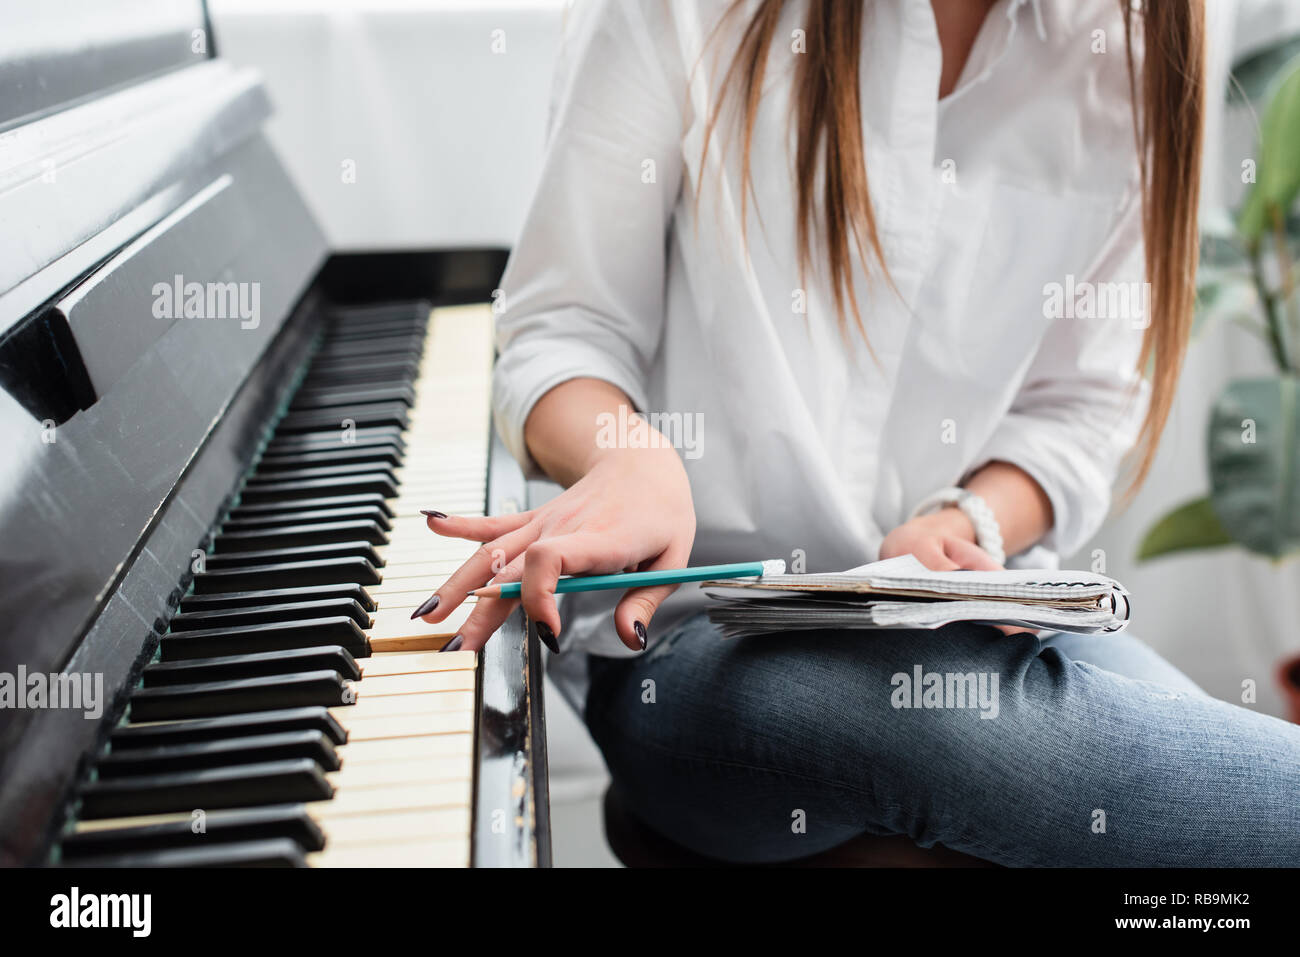 Нейронка пишет песни. Женщина сочиняет музыку. Девушка в сорочке играет на пианино. Девушка играет на фортепьяно. Девушка играет на фортепиано в белой рубашке.